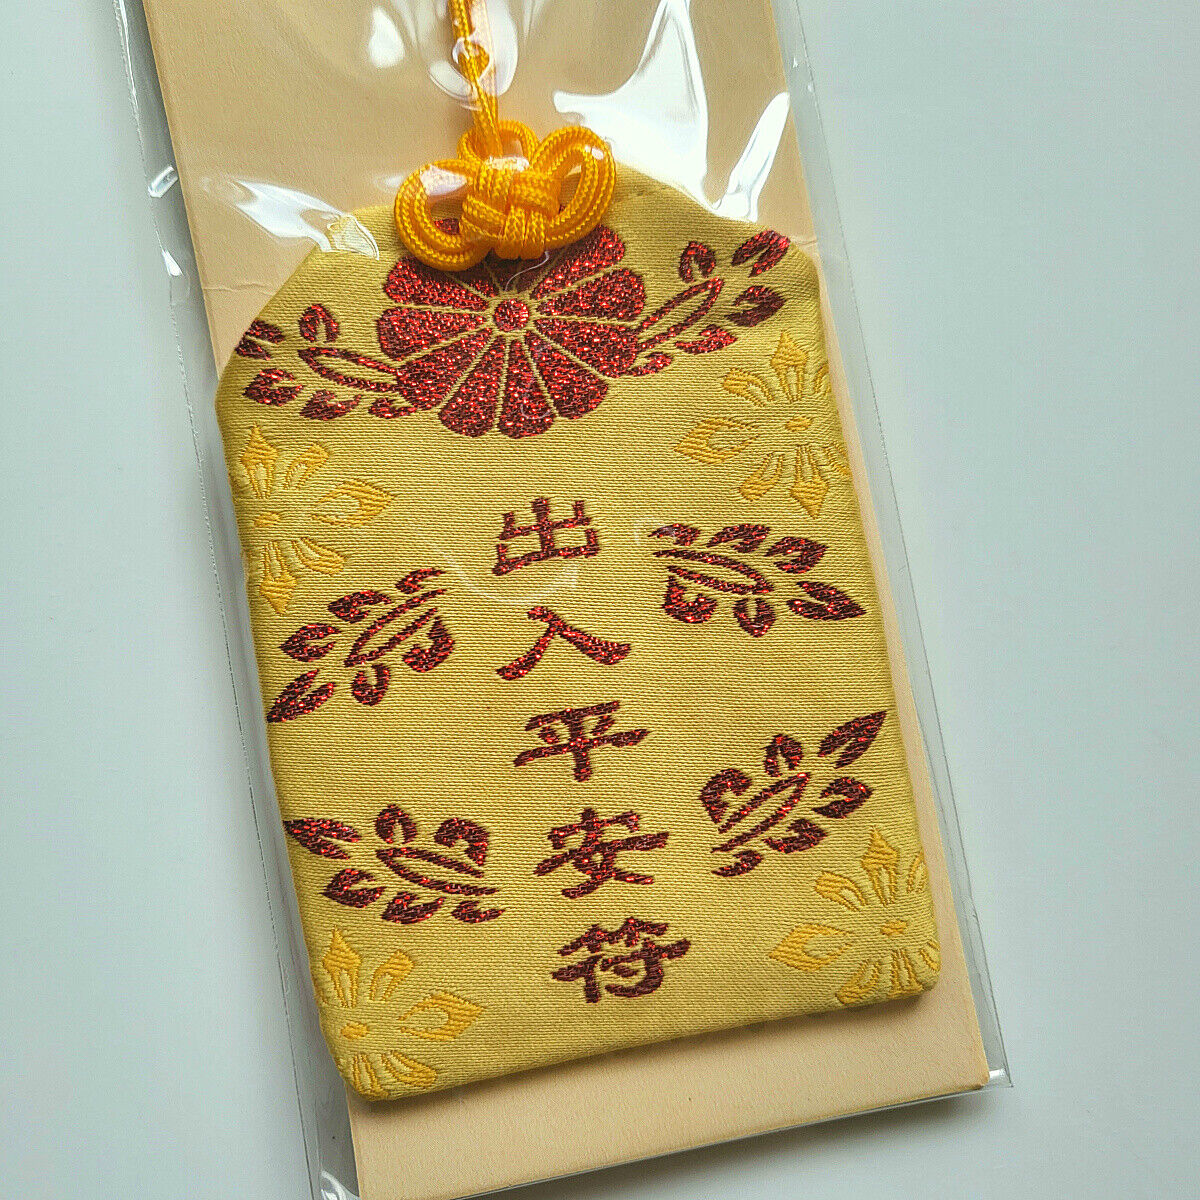 中式城隍庙祈福御守护身符平安幸运符驱邪升官聪明智慧符，挂件福袋 